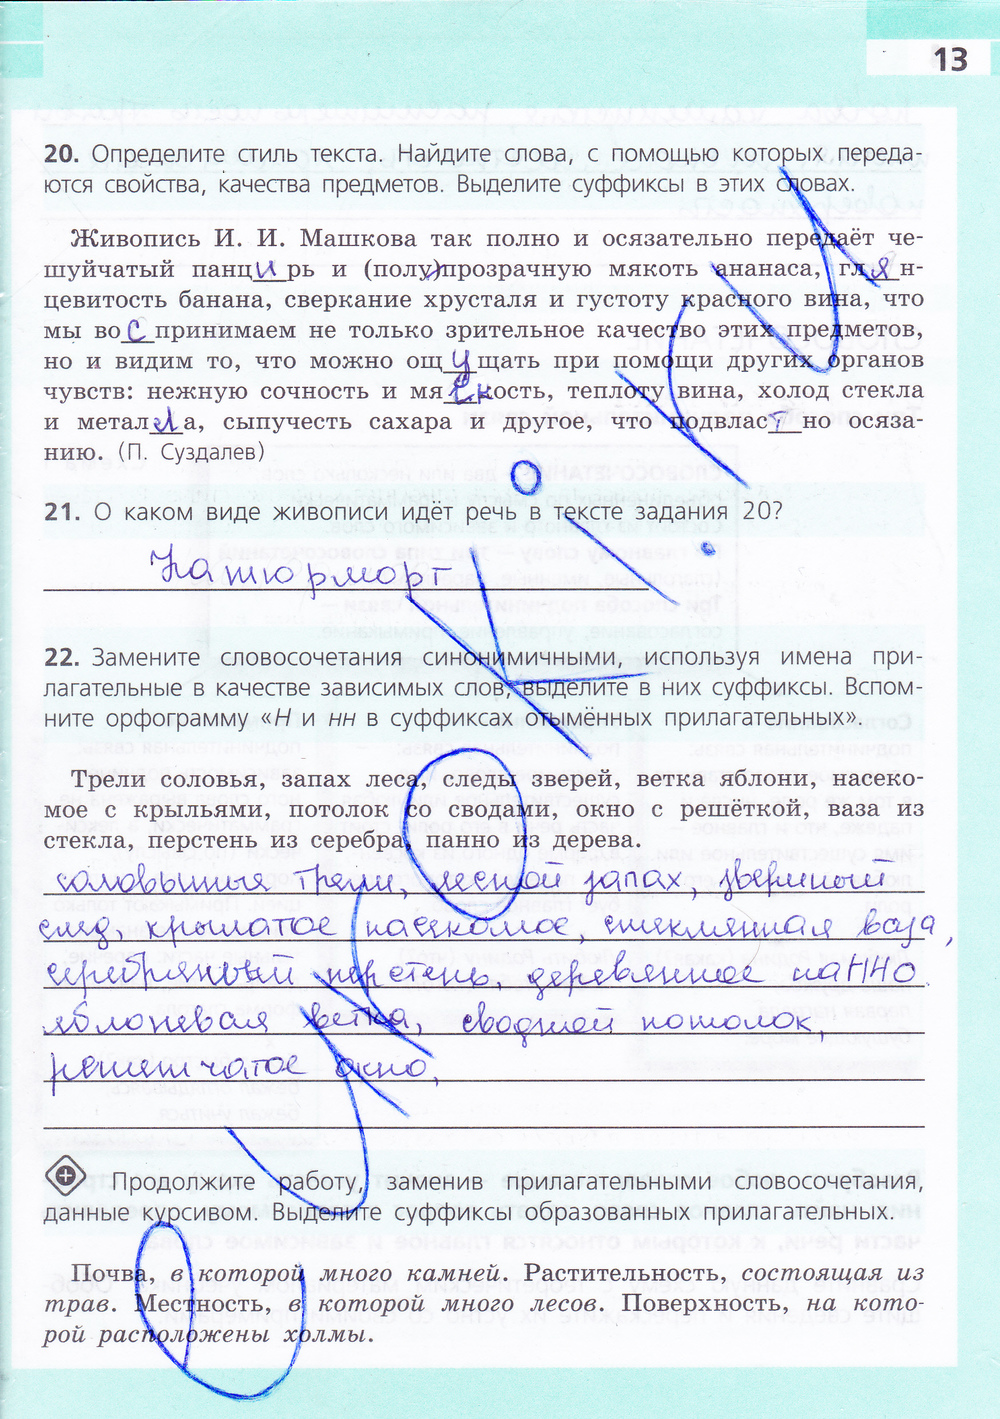 Гдзпо русскому языку рабочия тетрадь за 5 класс ефремова